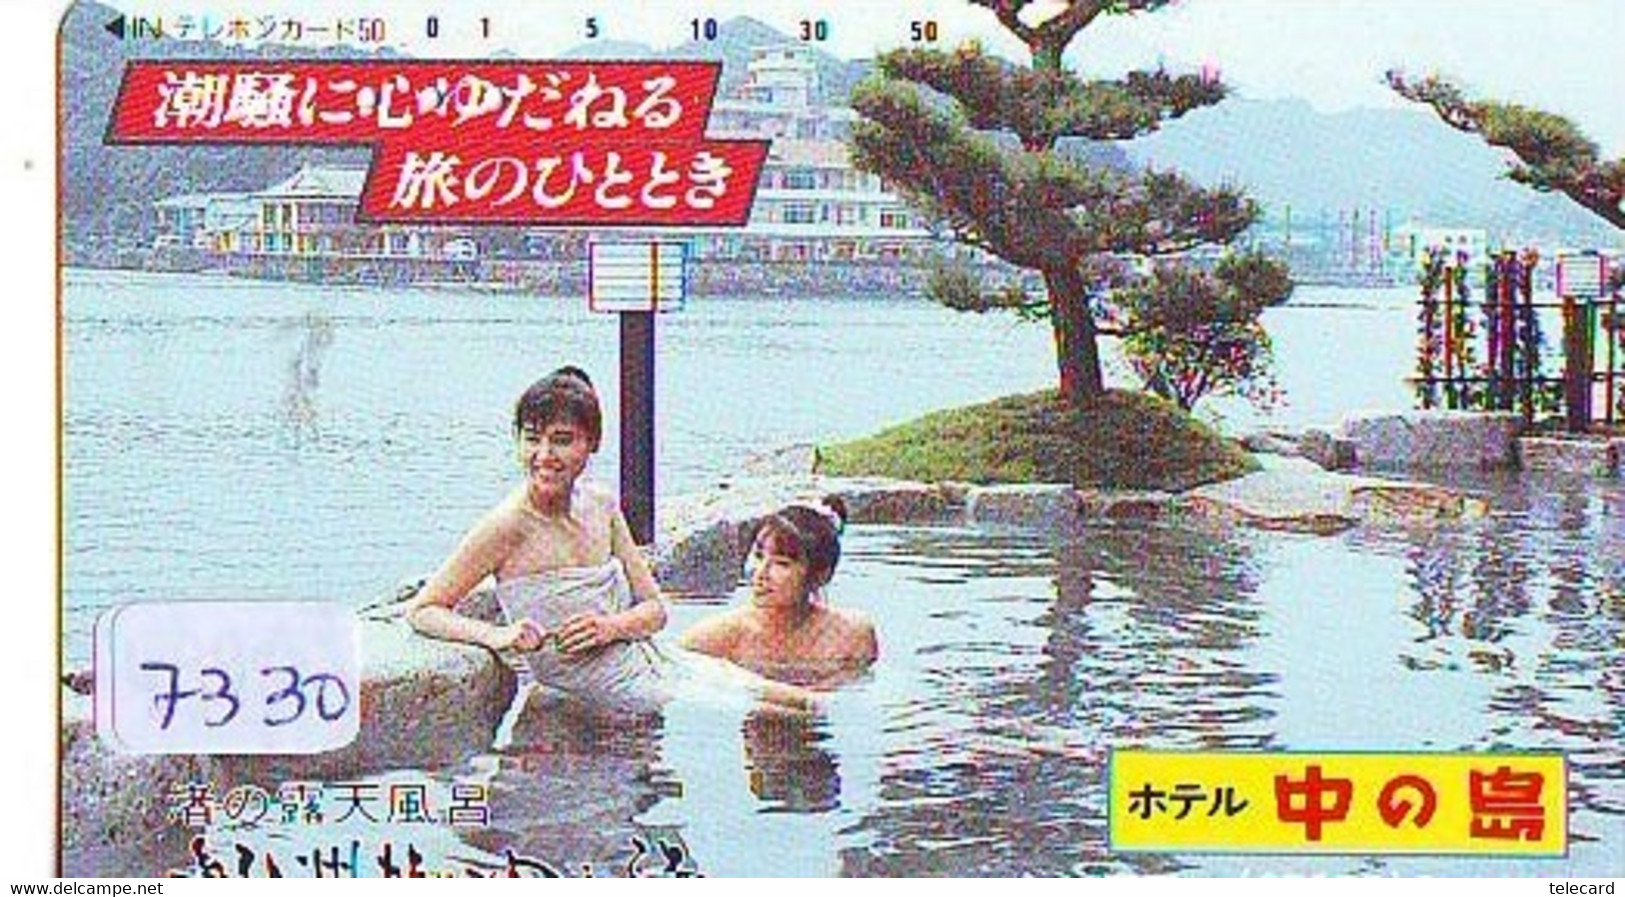 Télécarte Japon * FEMME EROTIQUE (7330) BATH * PHONECARD JAPAN * TELEFONKARTE *  BATHCLOTHES LINGERIE - Mode